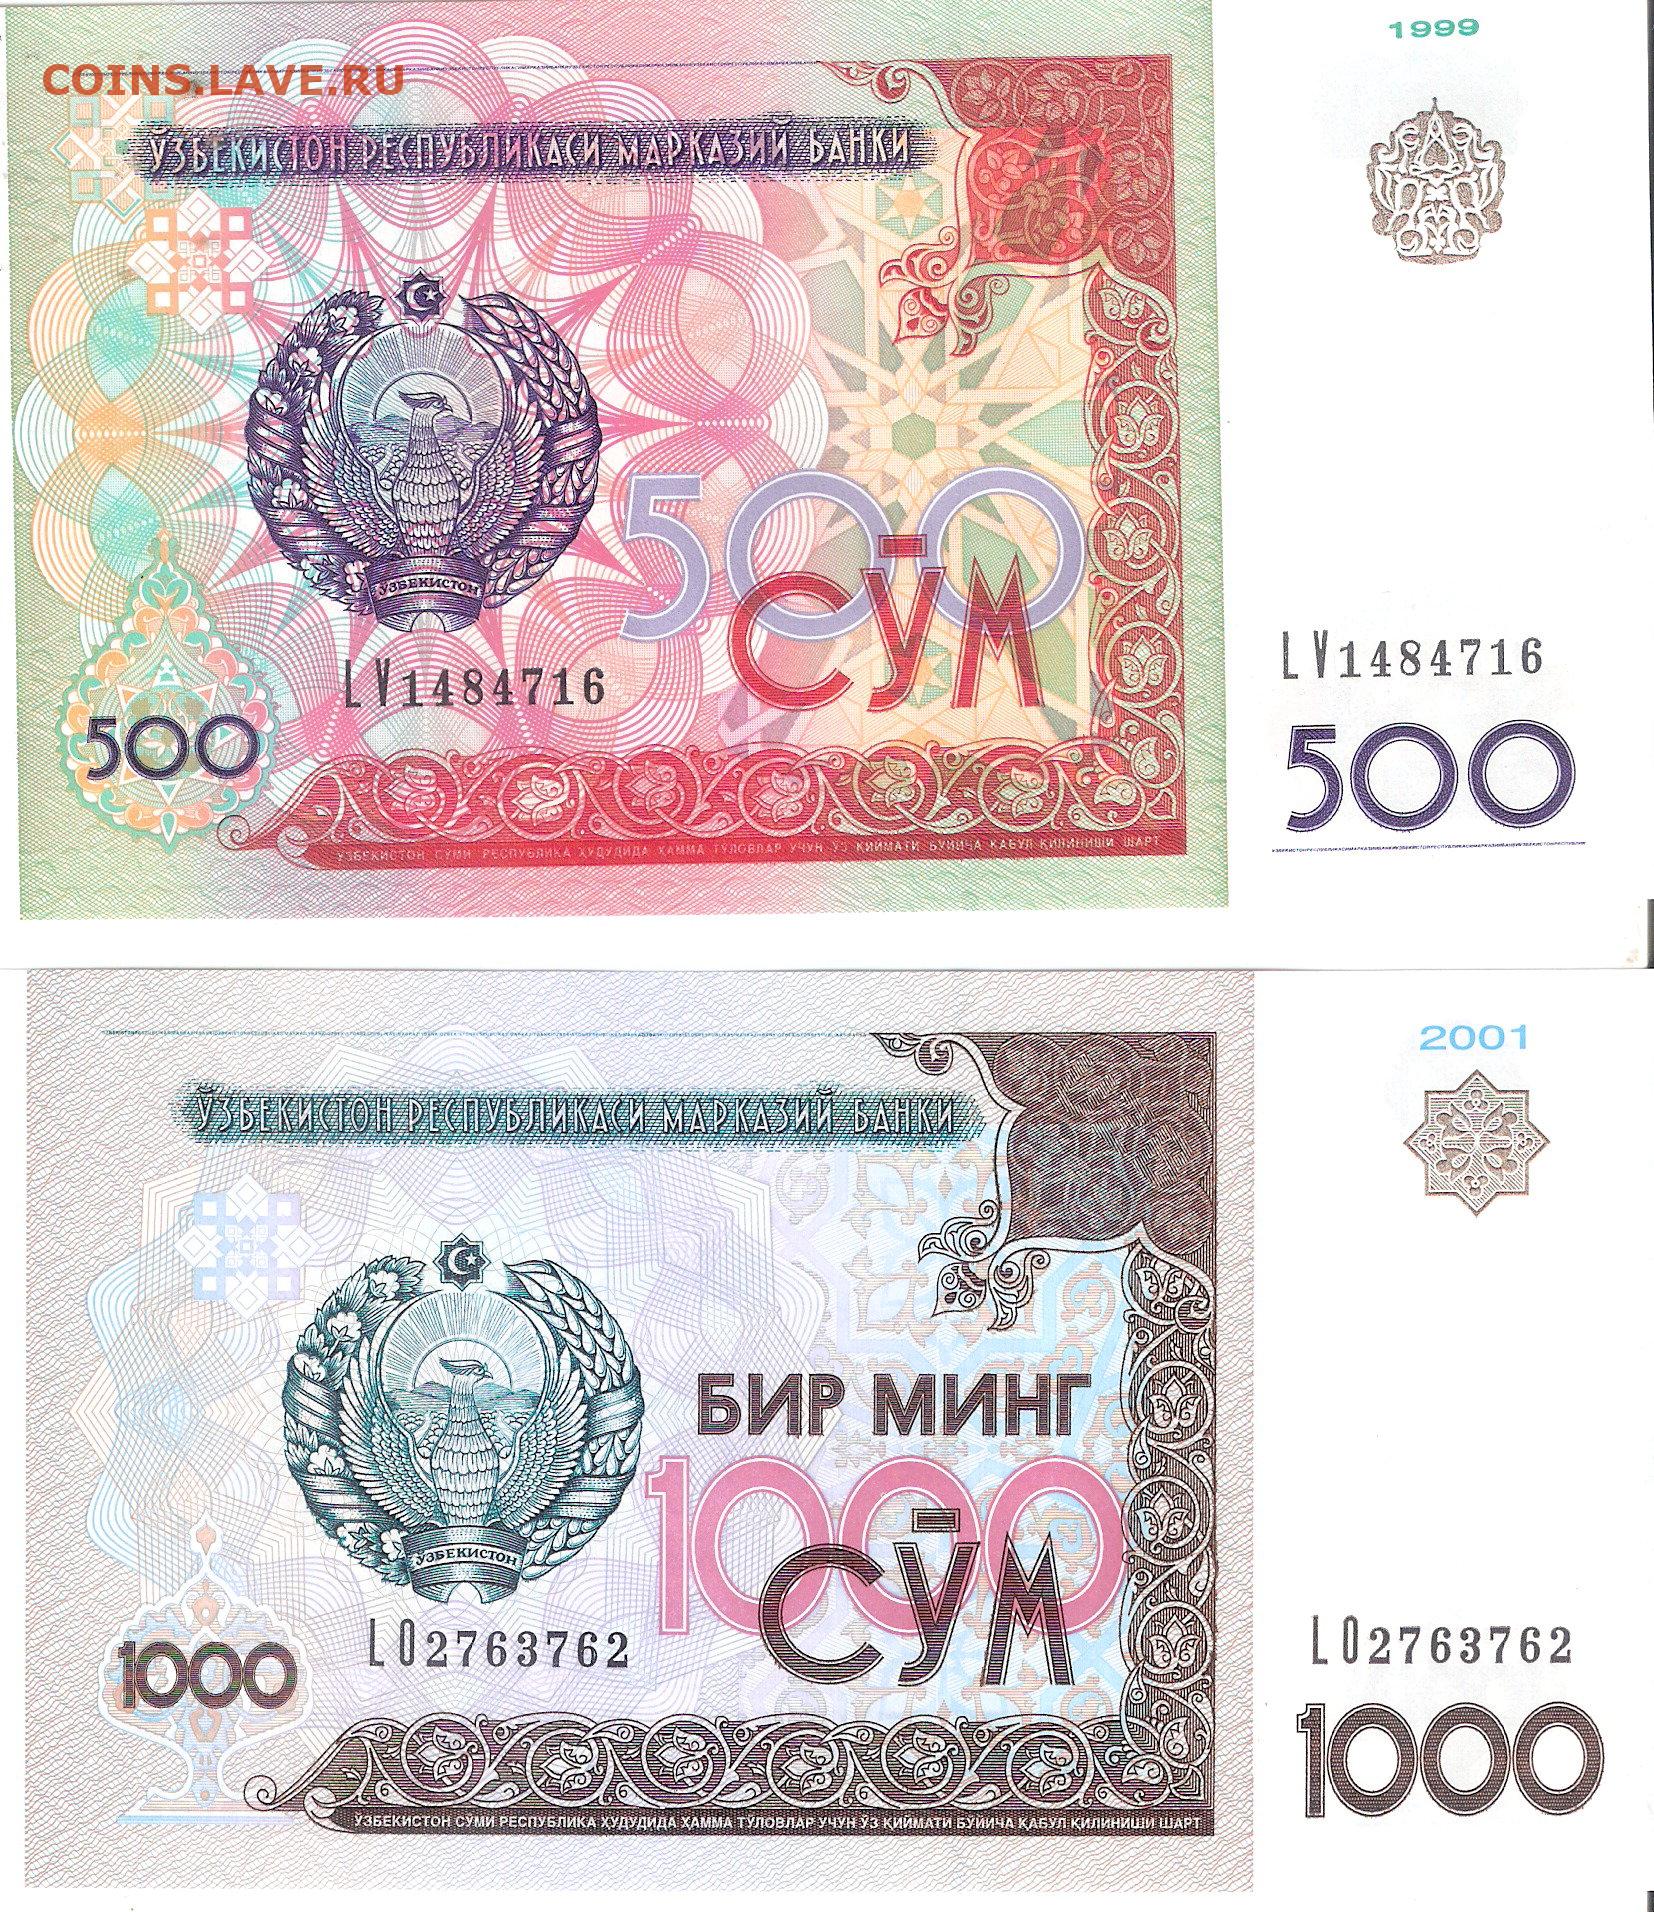 1000 сум узбекистан сколько. 500 Сўм. Узбекистан 500 сом 1999. Банкнота 500 сум Узбекистан. Купюра Узбекистана 1000.